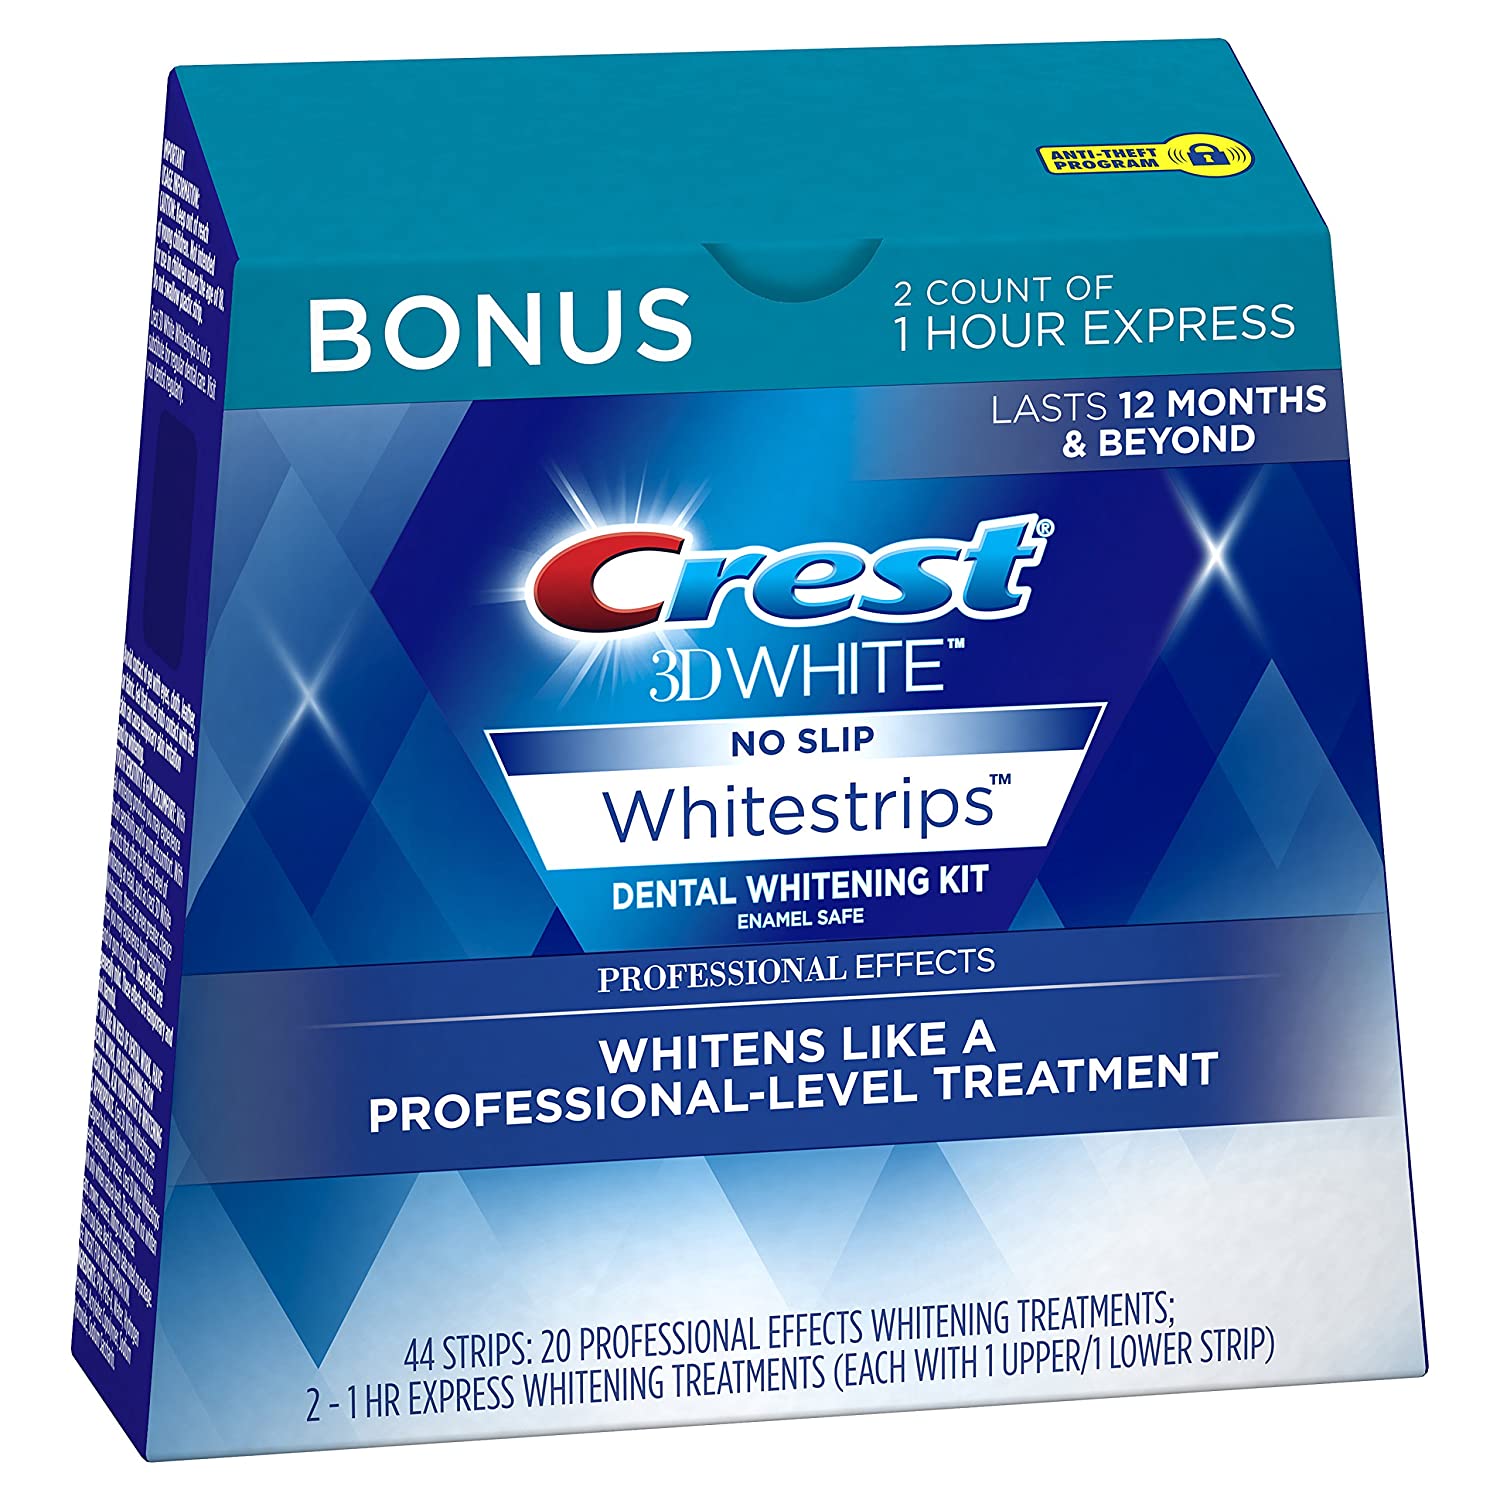 我选择最好的牙齿美白产品Crest 3D White Professional Effects Whitestrips。